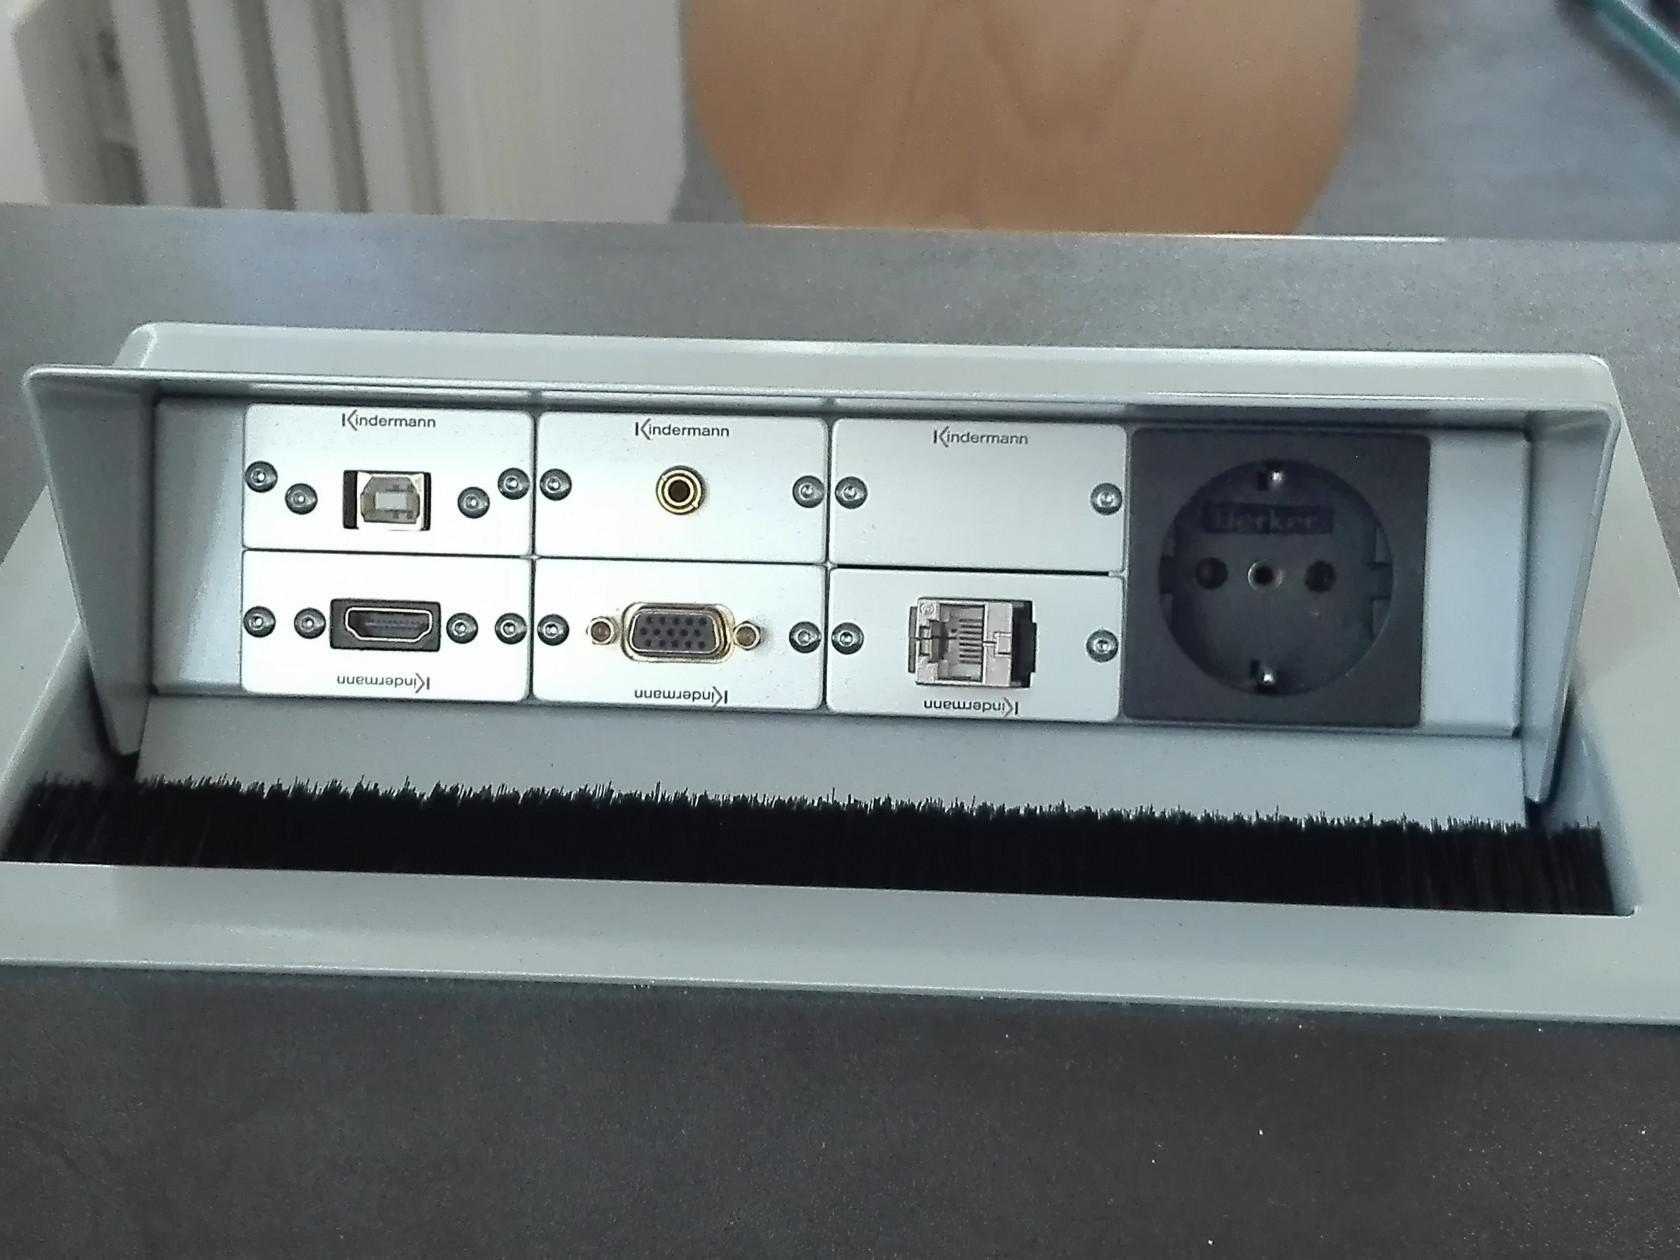 Anschlussfeld mit HDMI-, VGA-, 3,5mm-Audio- und Netzwerkanschluss